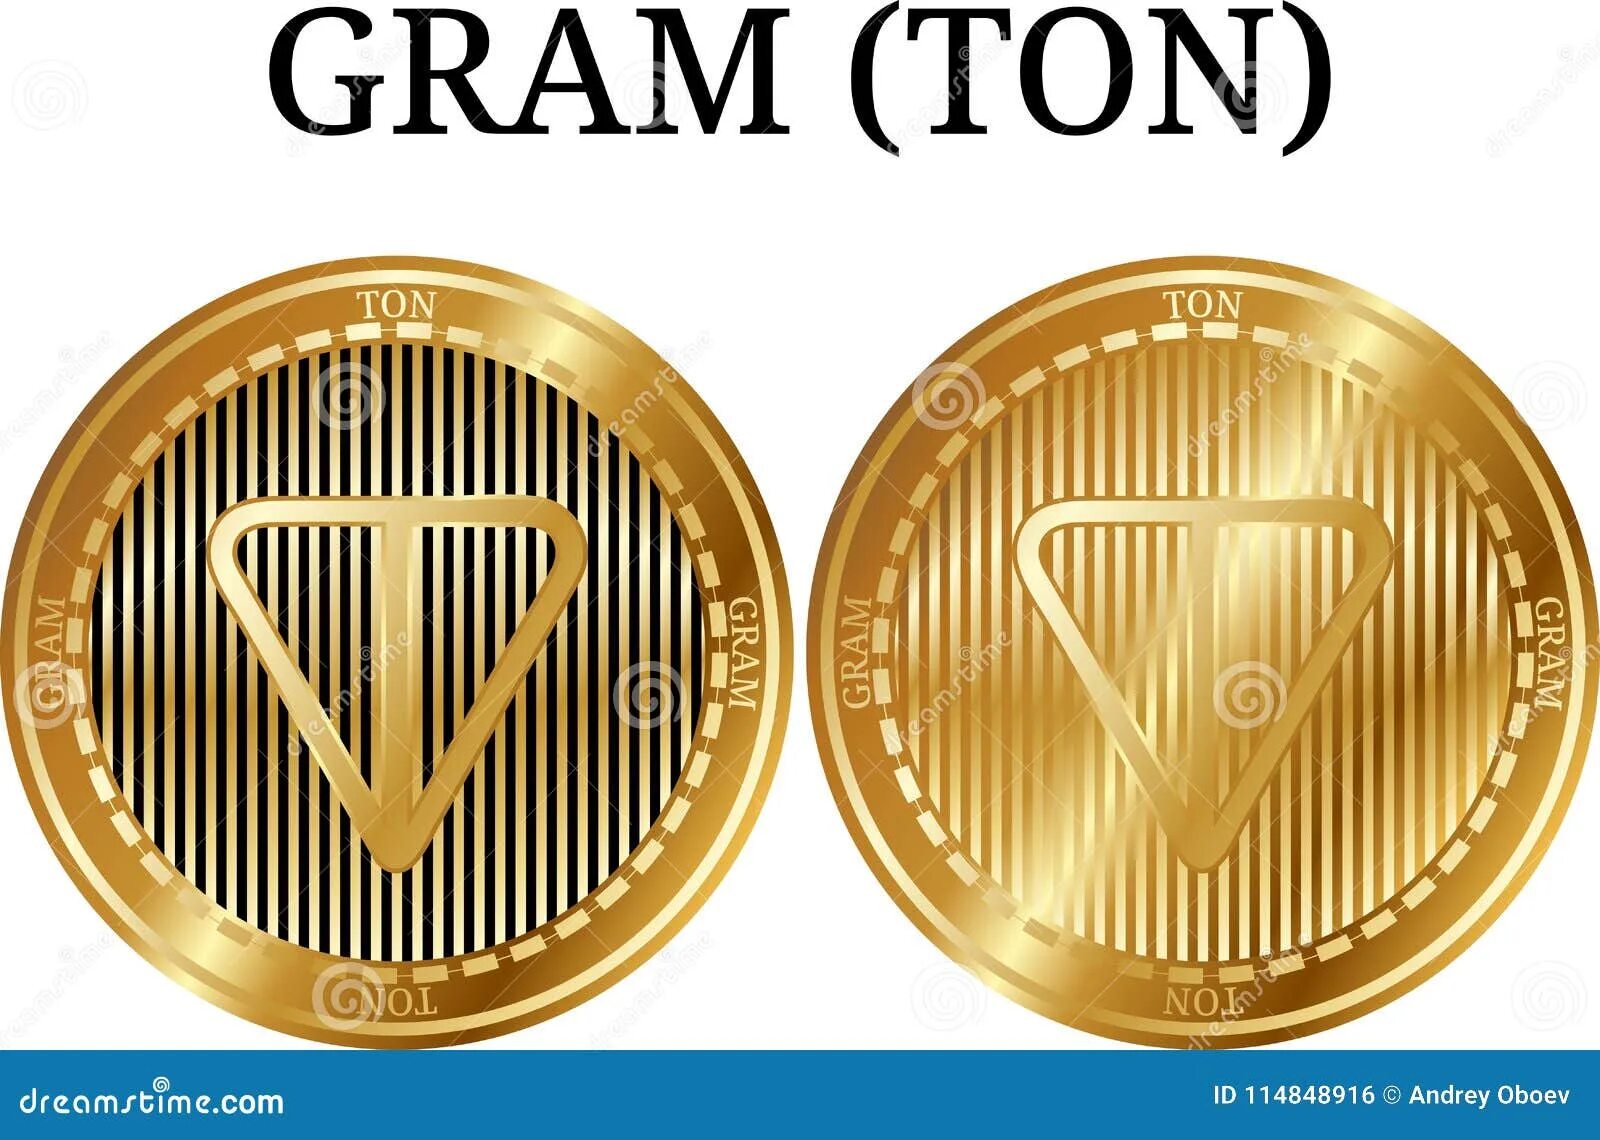 Ton coin цена в рублях на сегодня. Монета gram. Ton Coin монета. Gram ton. Логотип ton Coin.